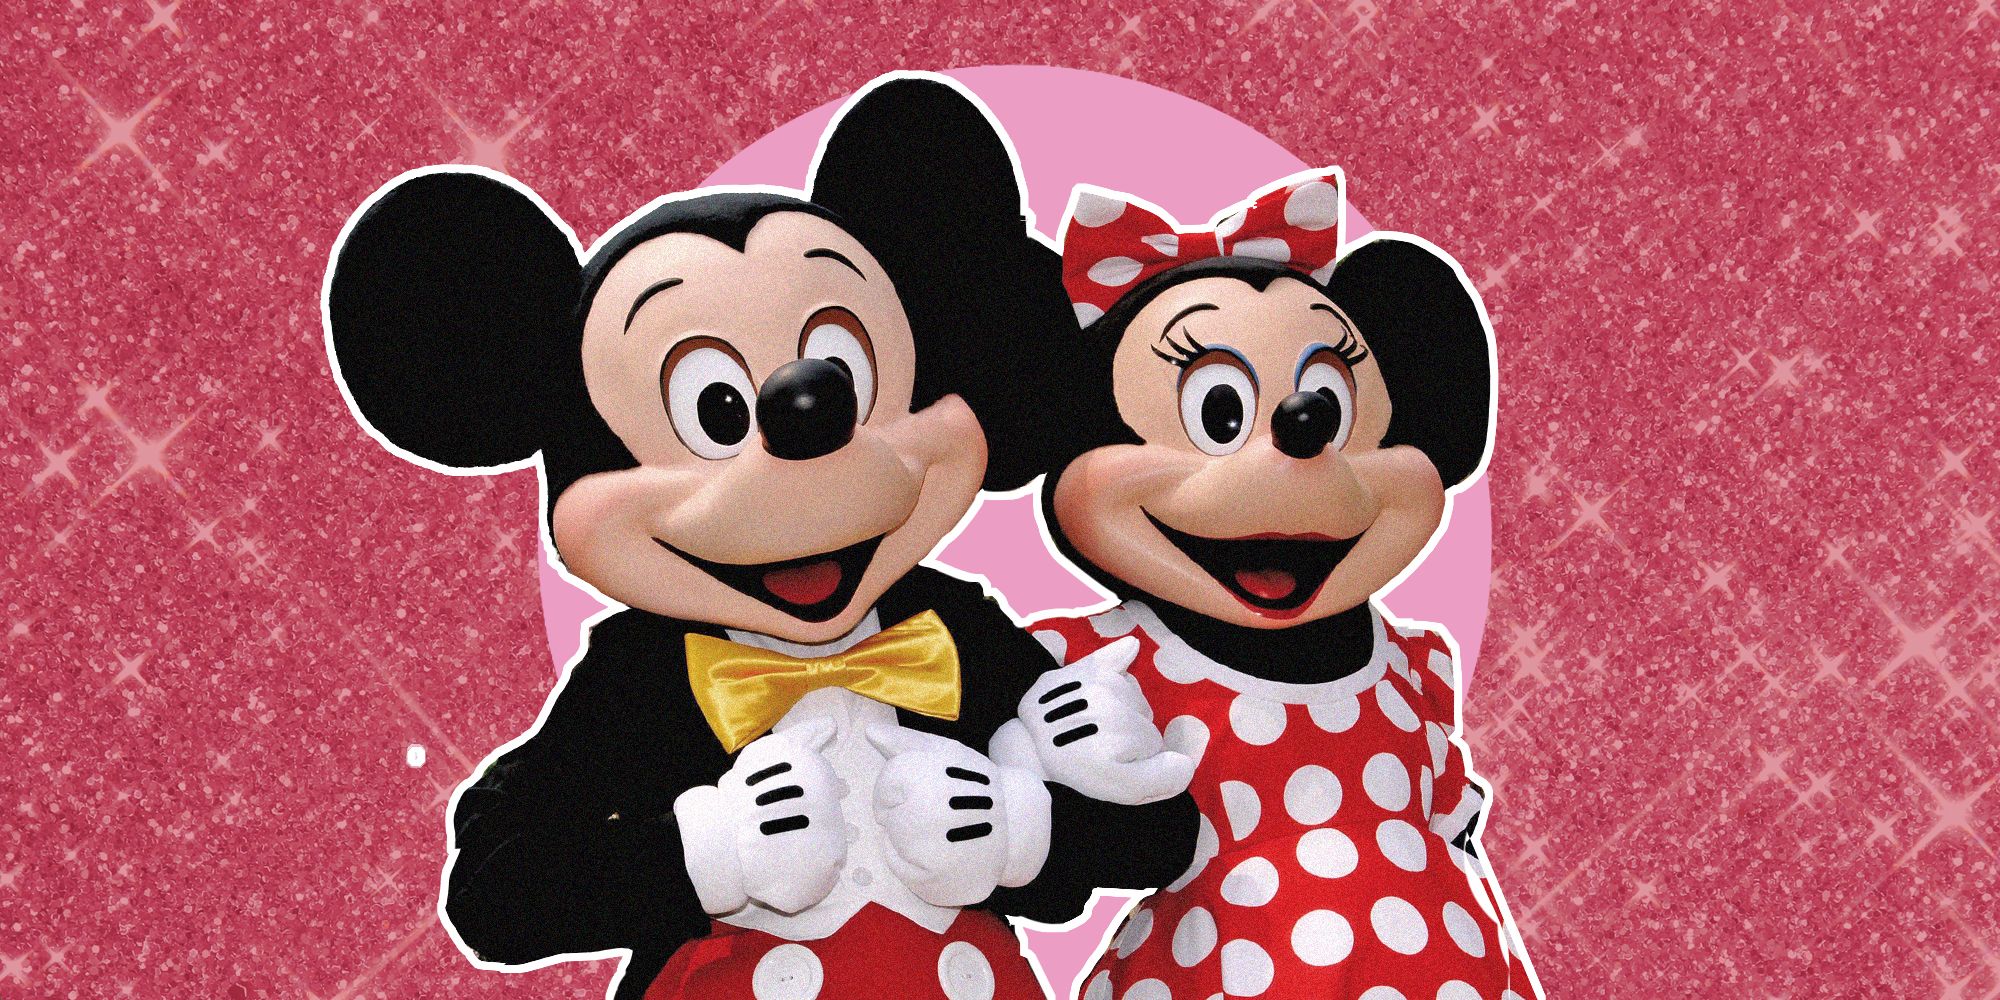 Quando si festeggia il Capodanno Cinese 2020, ovvero year of the rat, è il 25 gennaio e la moda con Mickey Mouse e Minnie lo fa con Gucci, adidas e Uniqlo.